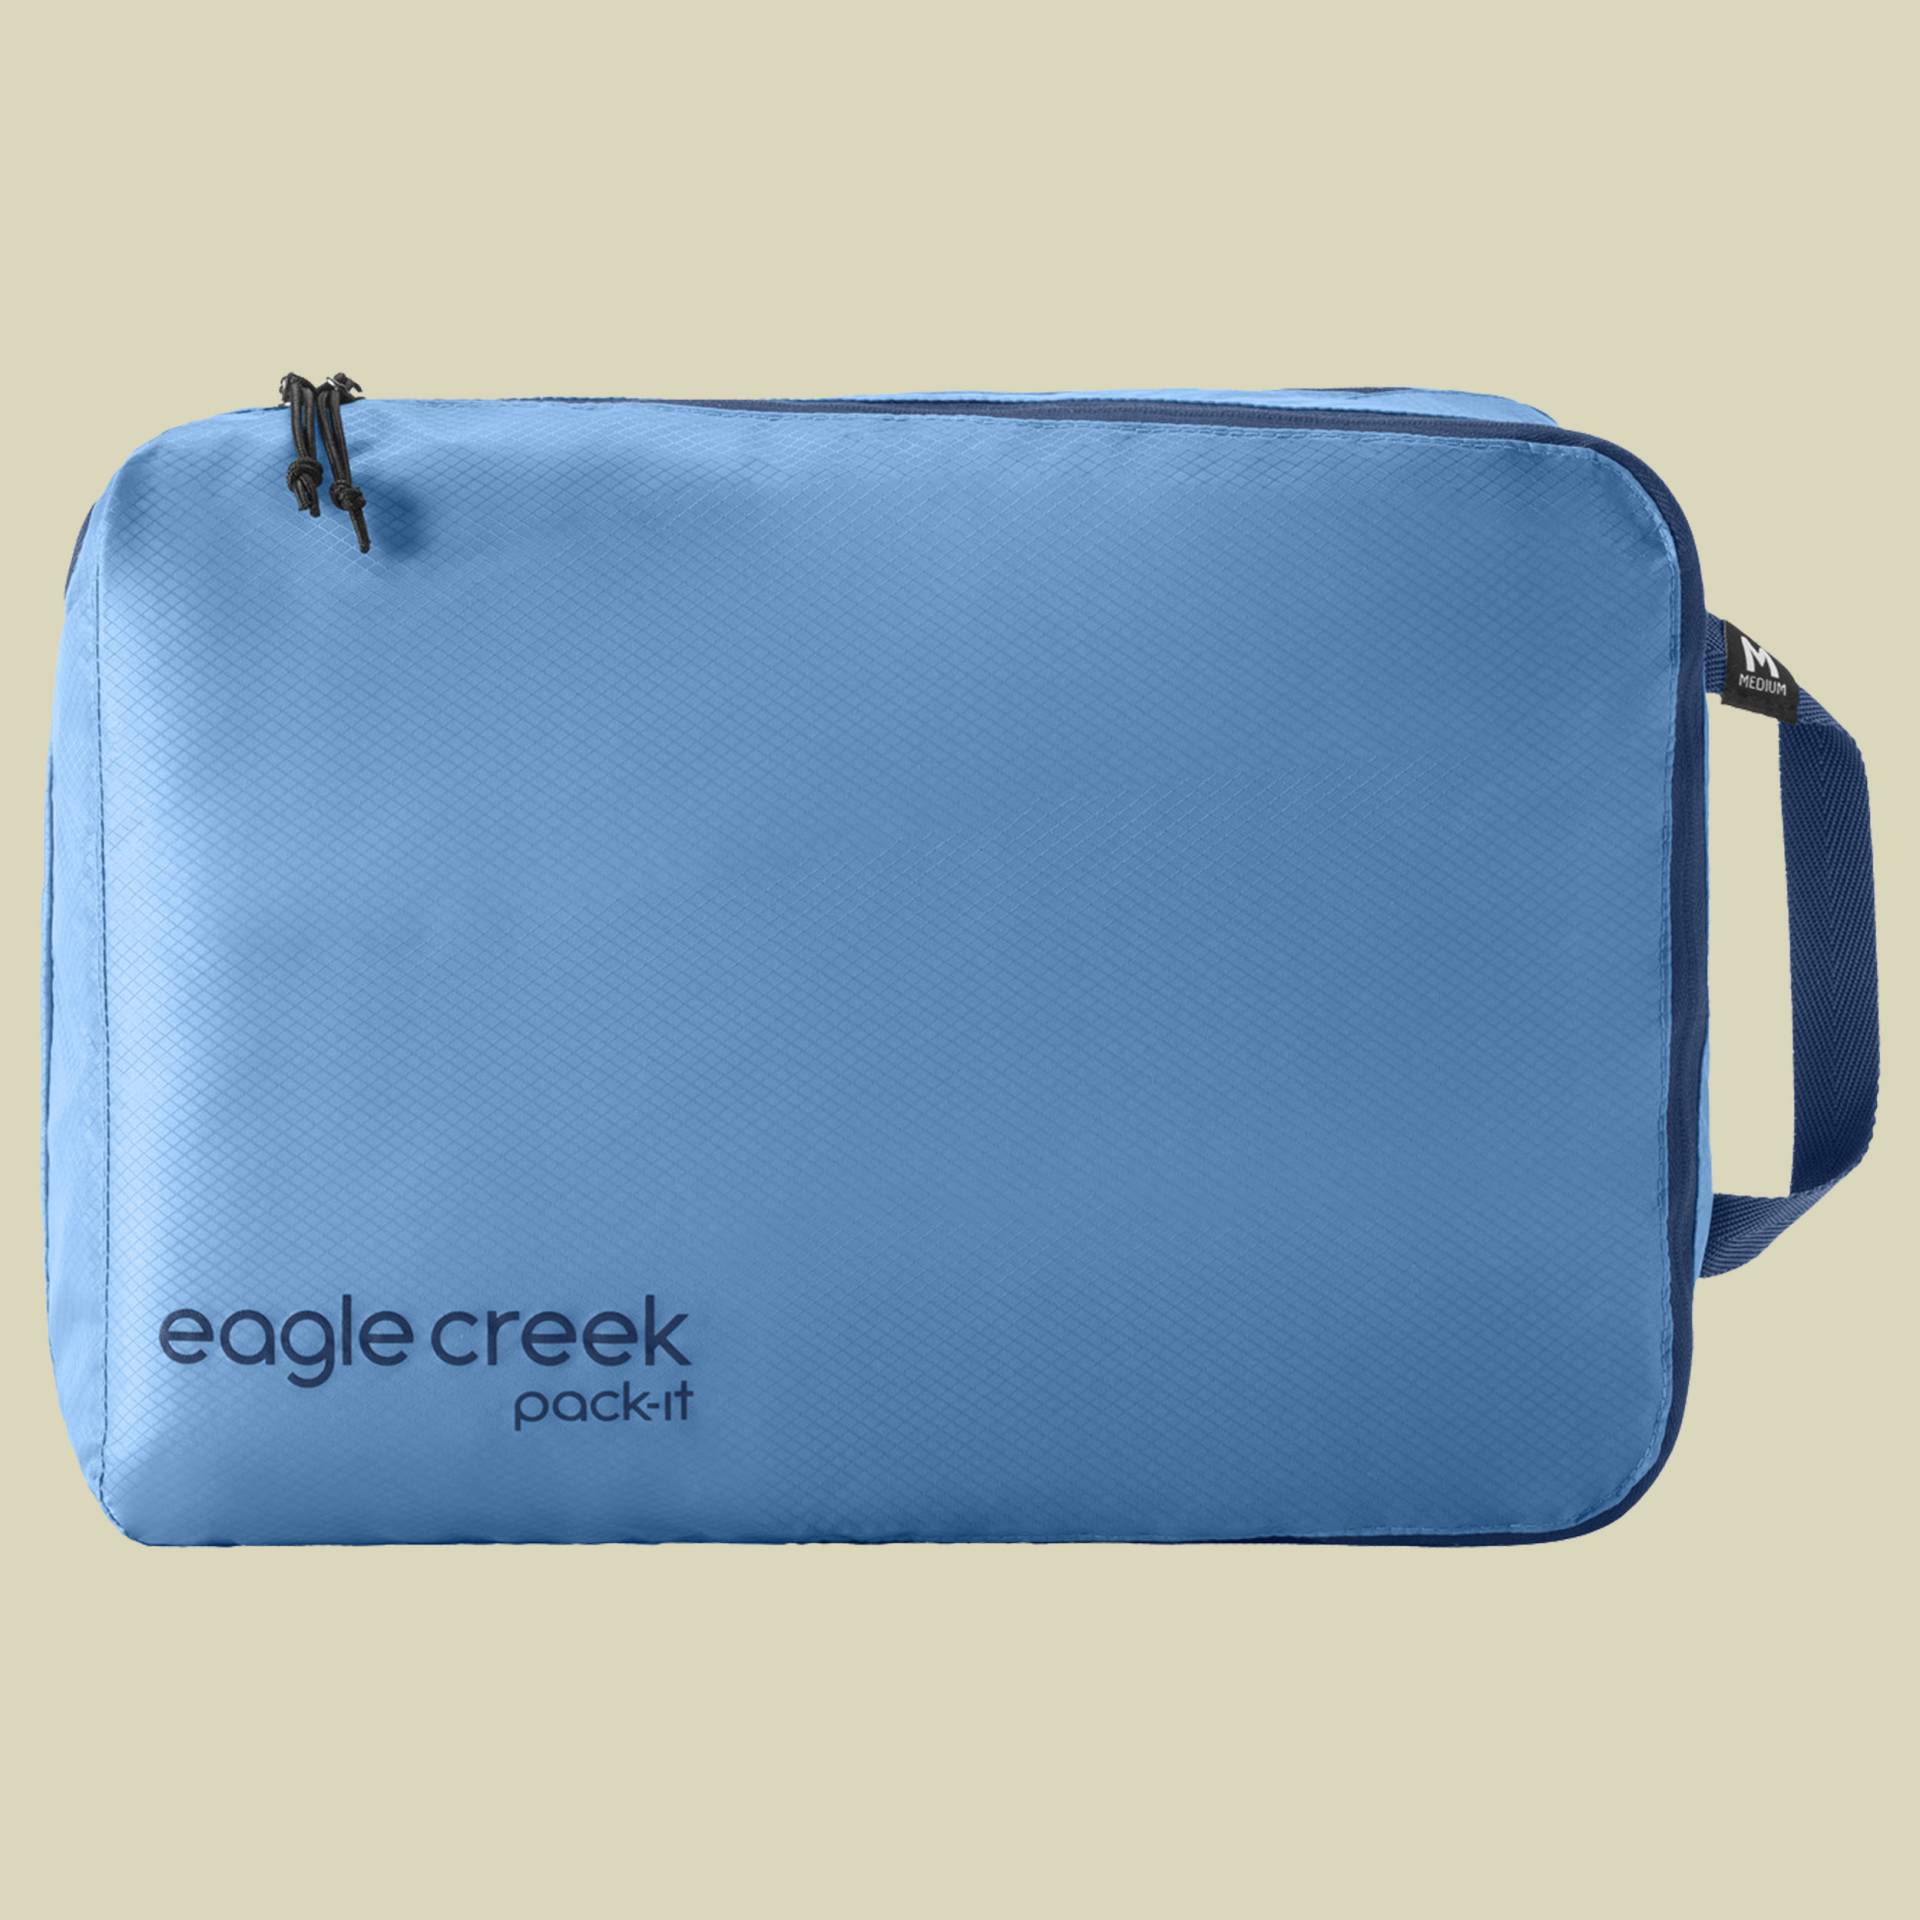 Pack-It Isolate Clean/Dirty Cube M blau - Farbe blue dawn von Eagle Creek